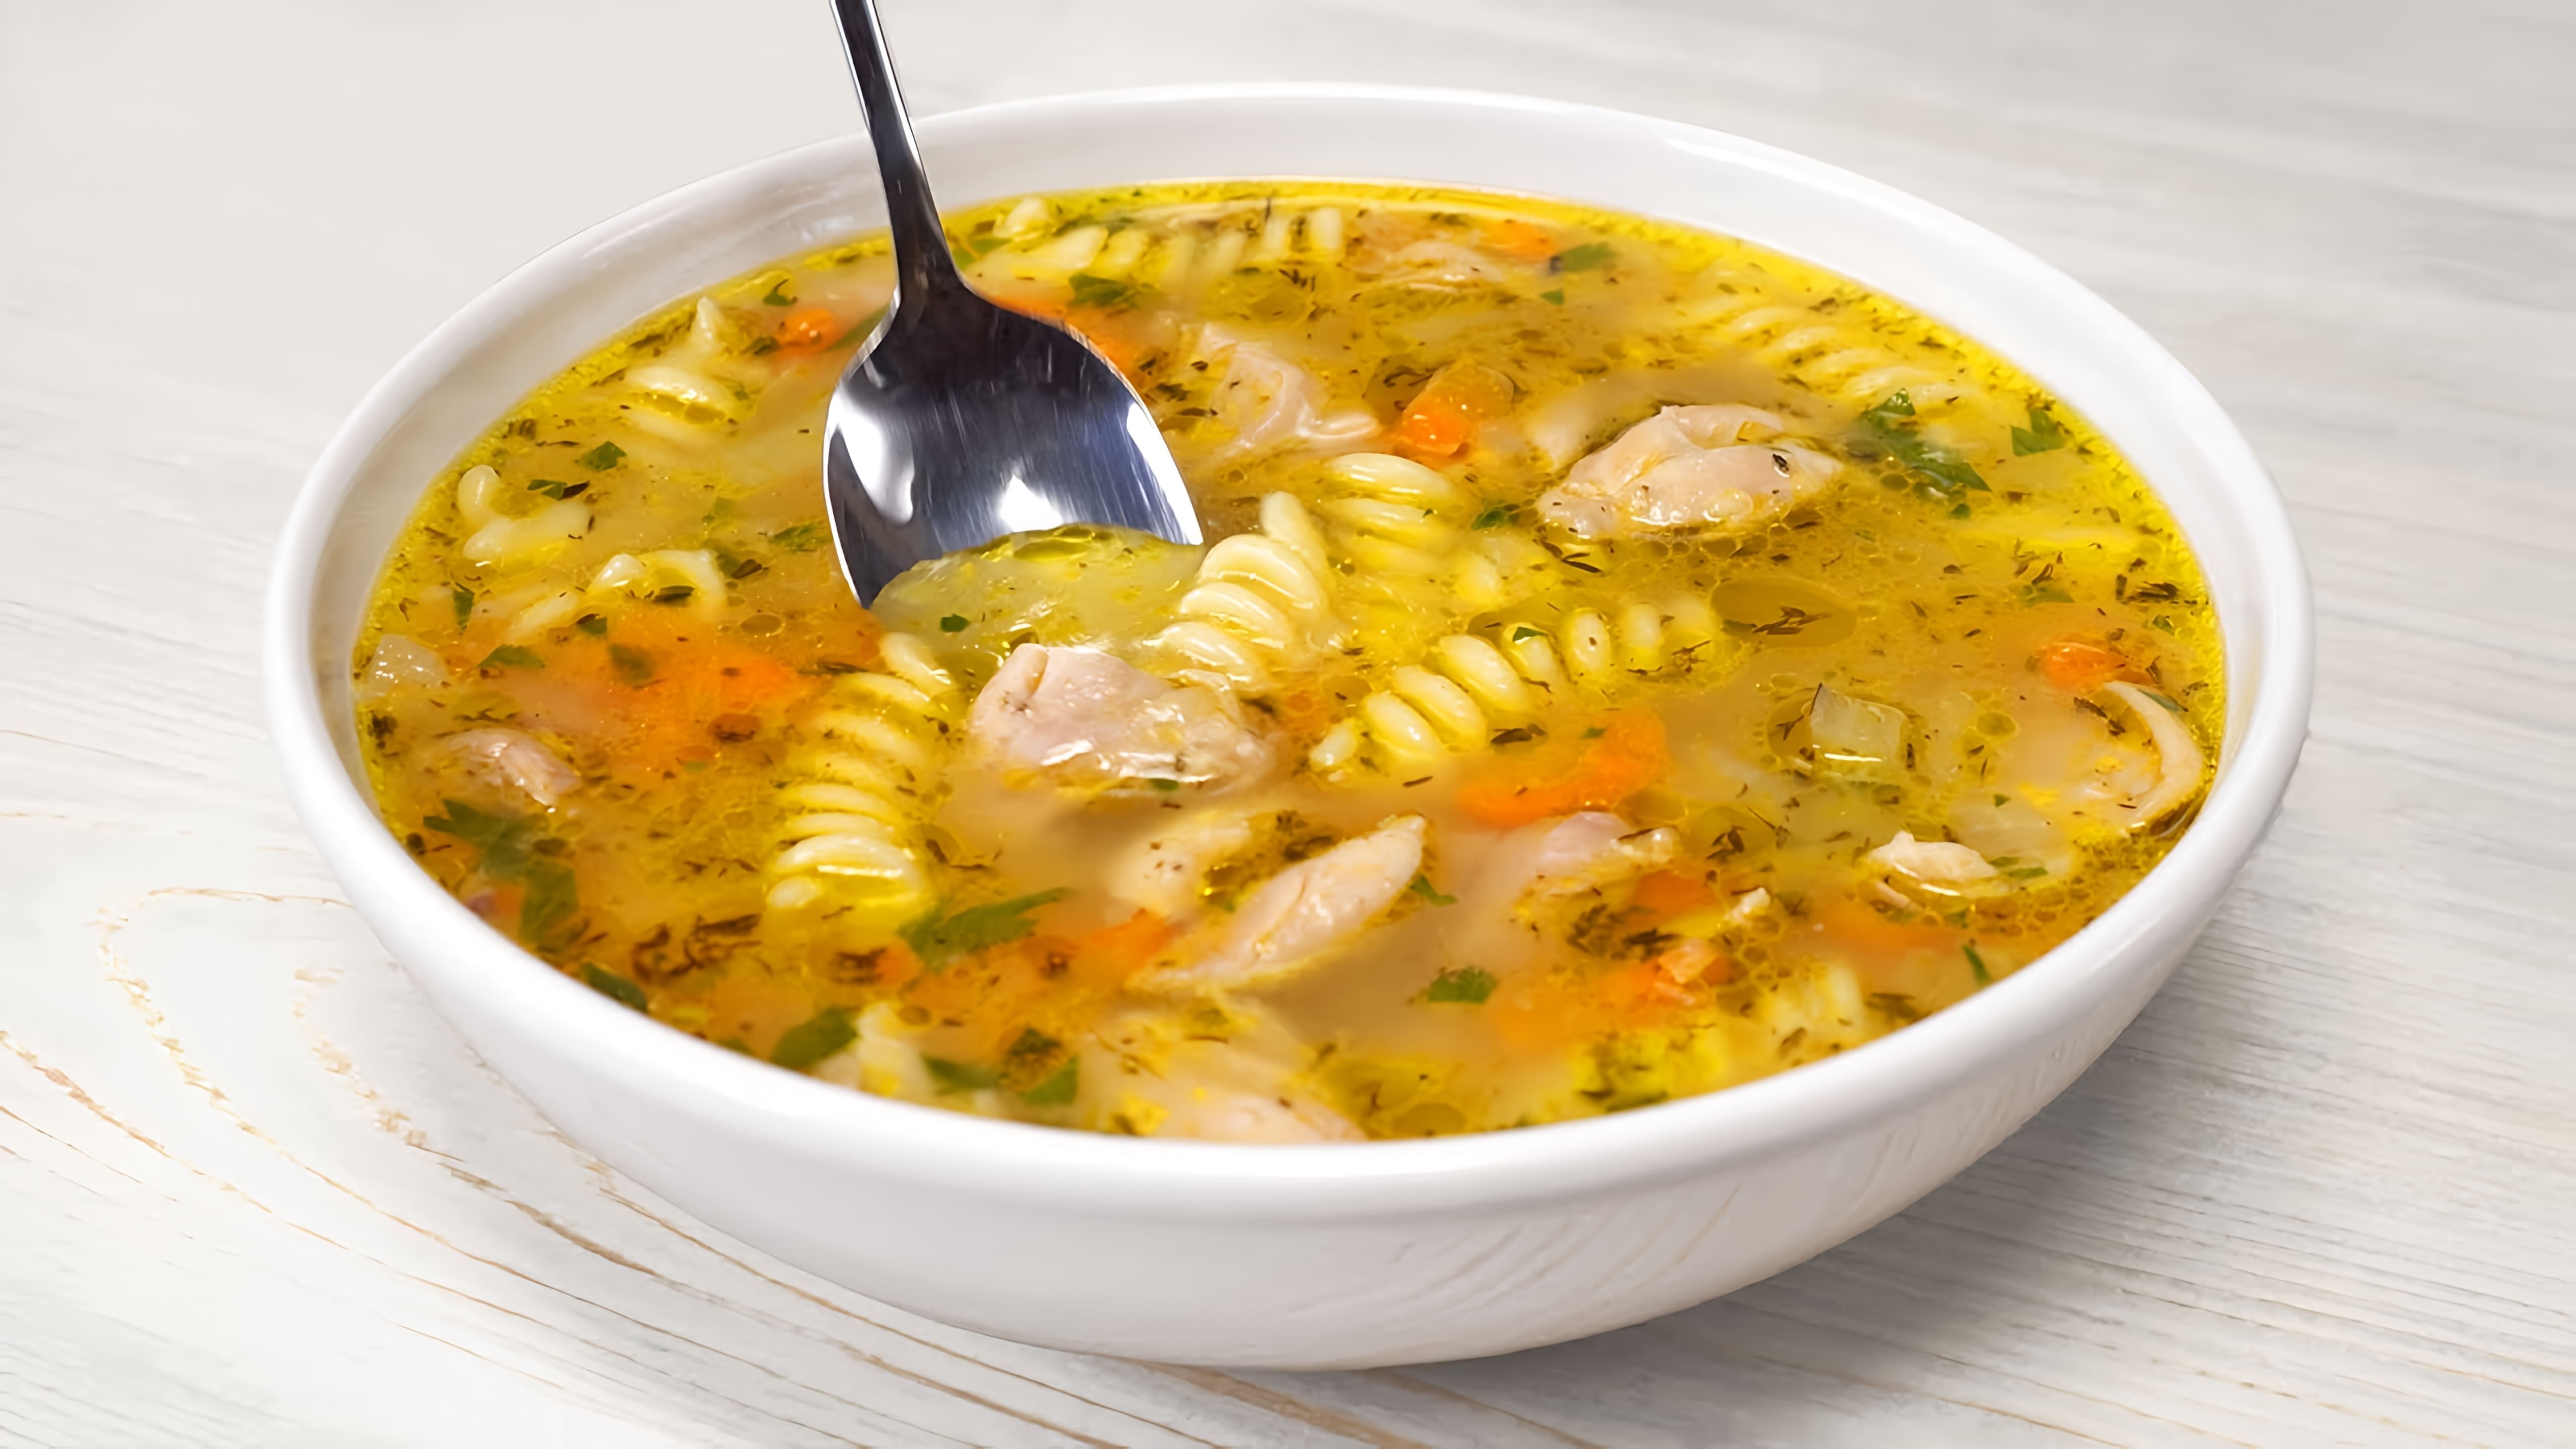 В этом видео демонстрируется рецепт приготовления куриного супа, который можно приготовить всего за полчаса